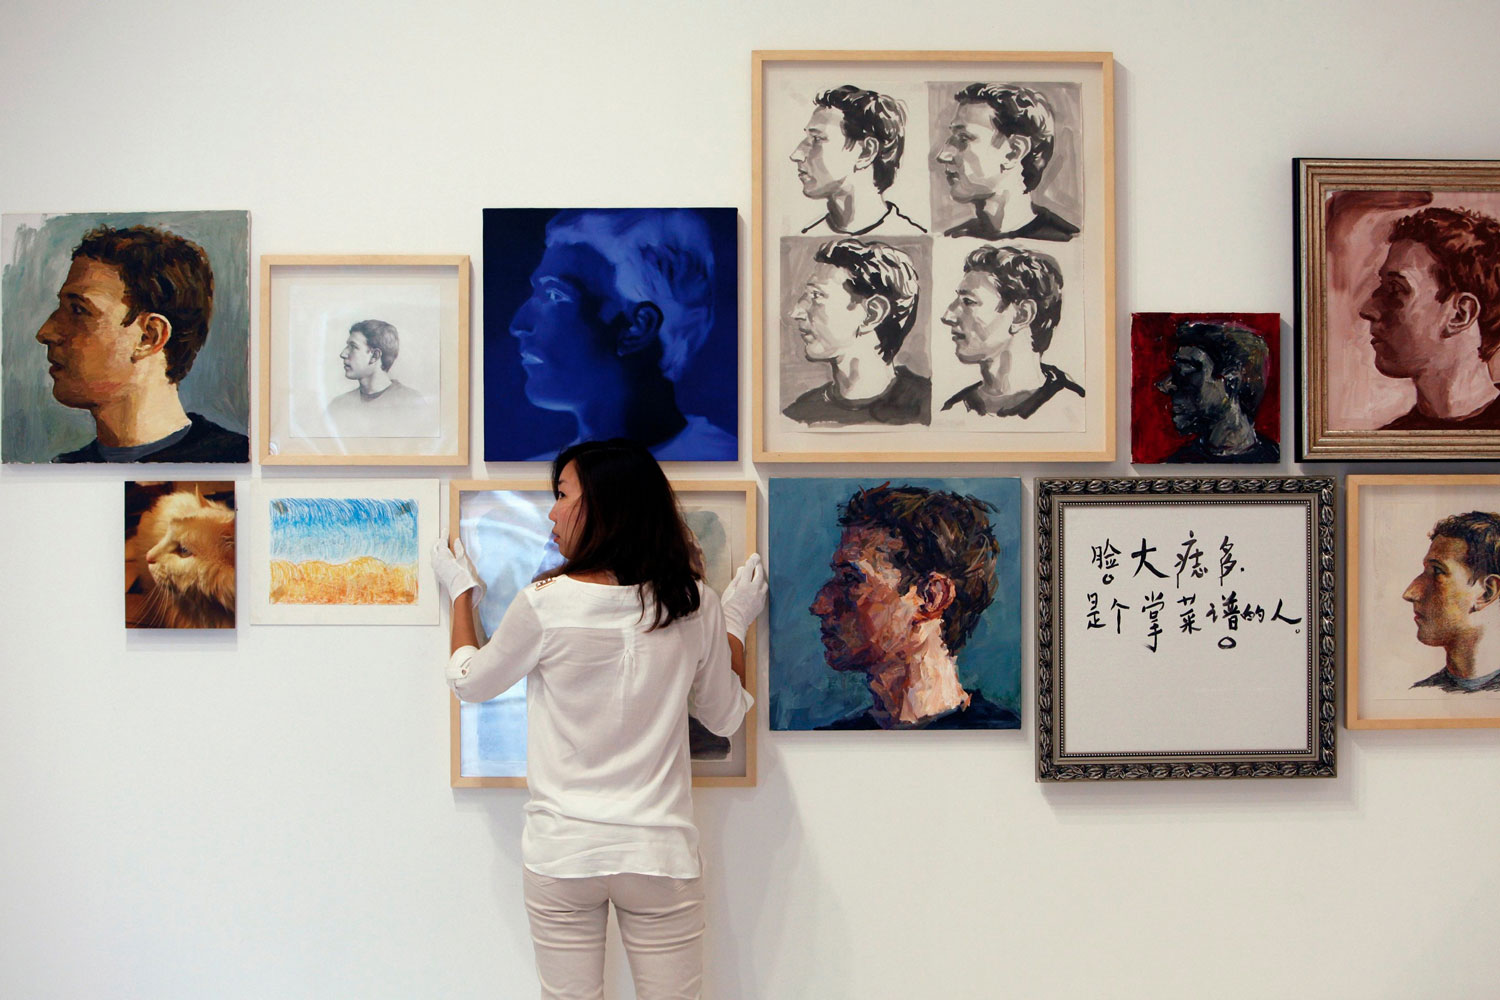 El artista Zhu Jia presenta en Singapur 'El rostro de Facebook', 67 recreaciones de Mark Zuckerberg